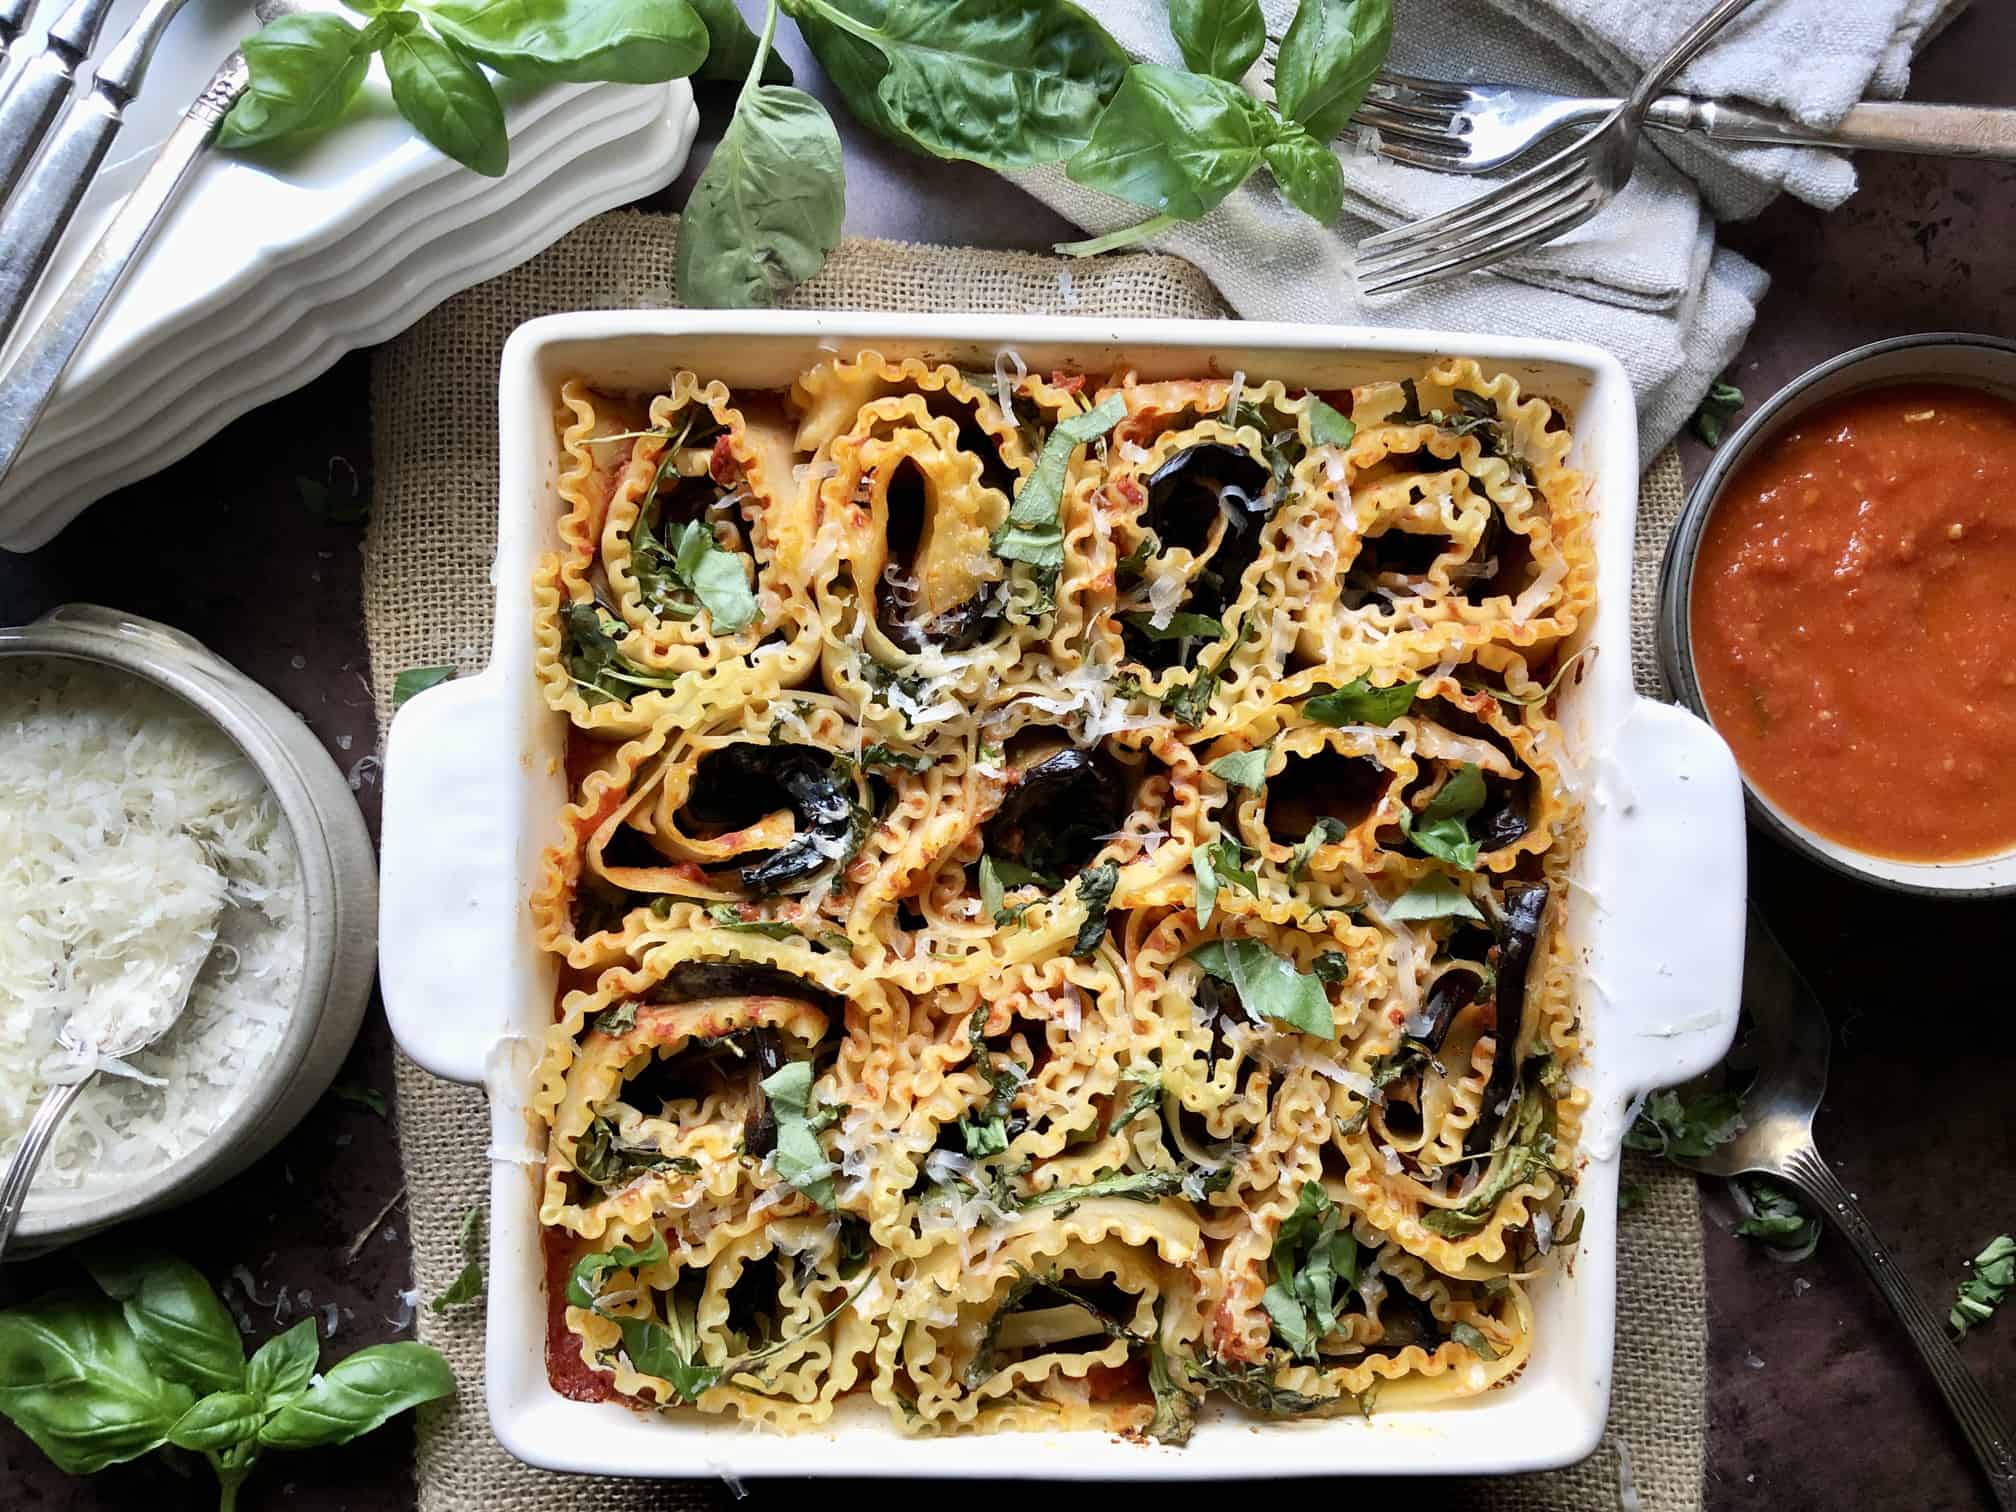 Pasta-Less Eggplant Lasagna Roll Ups, Recipe